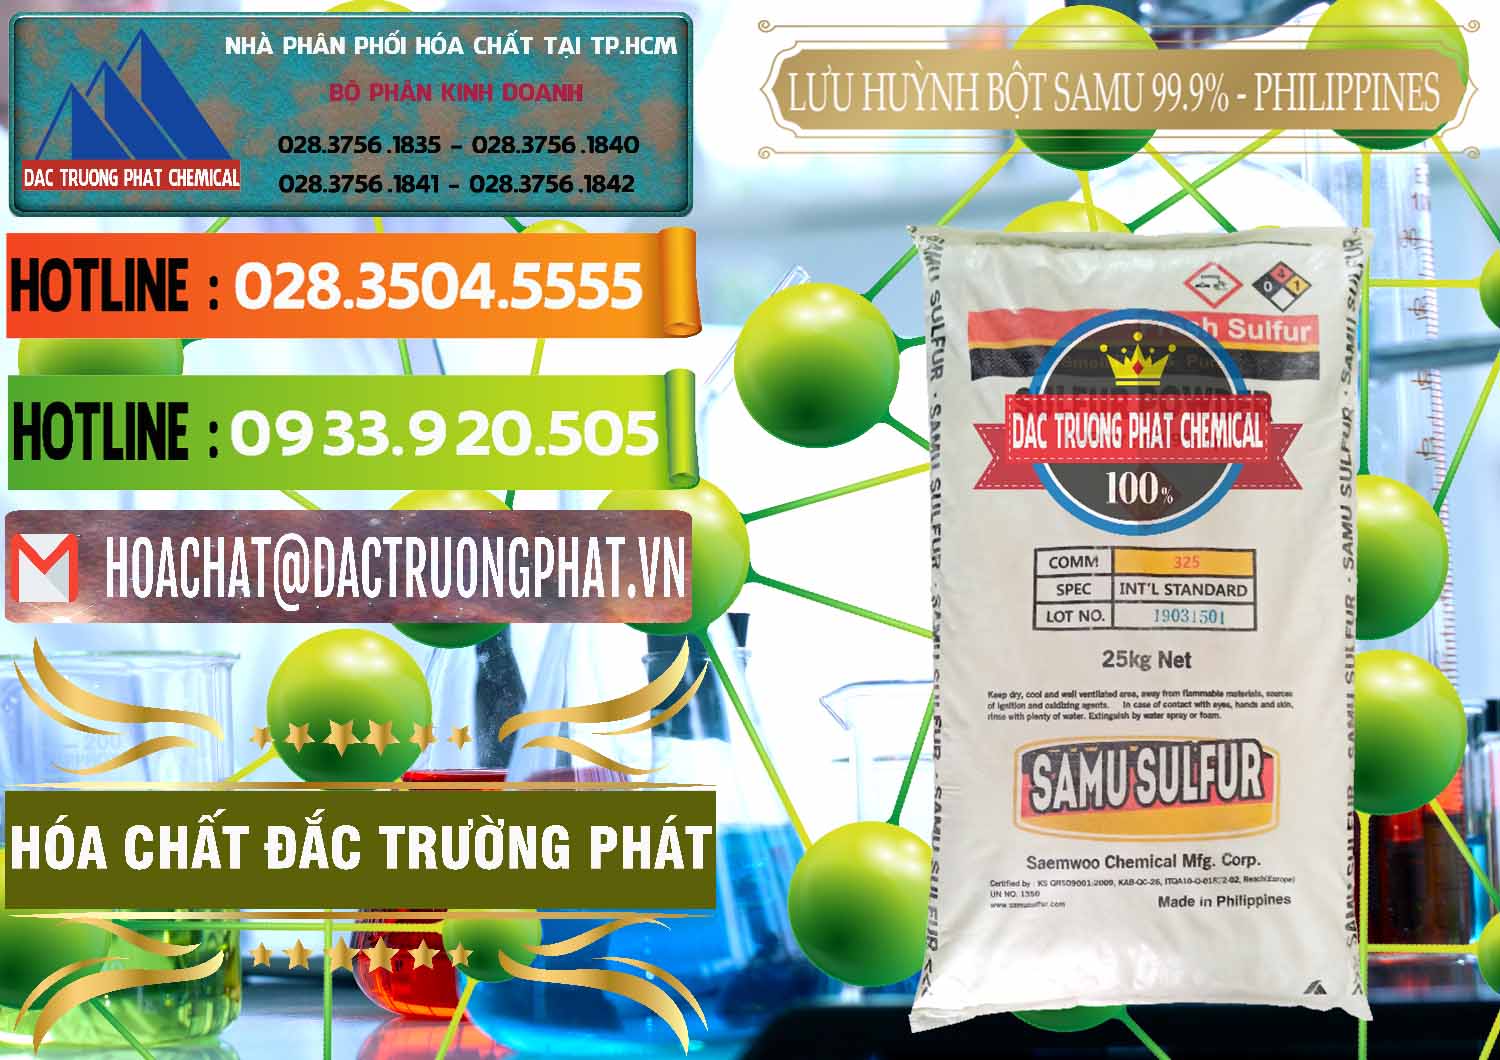 Chuyên kinh doanh và bán Lưu huỳnh Bột - Sulfur Powder Samu Philippines - 0201 - Công ty chuyên cung ứng và phân phối hóa chất tại TP.HCM - cungcaphoachat.com.vn